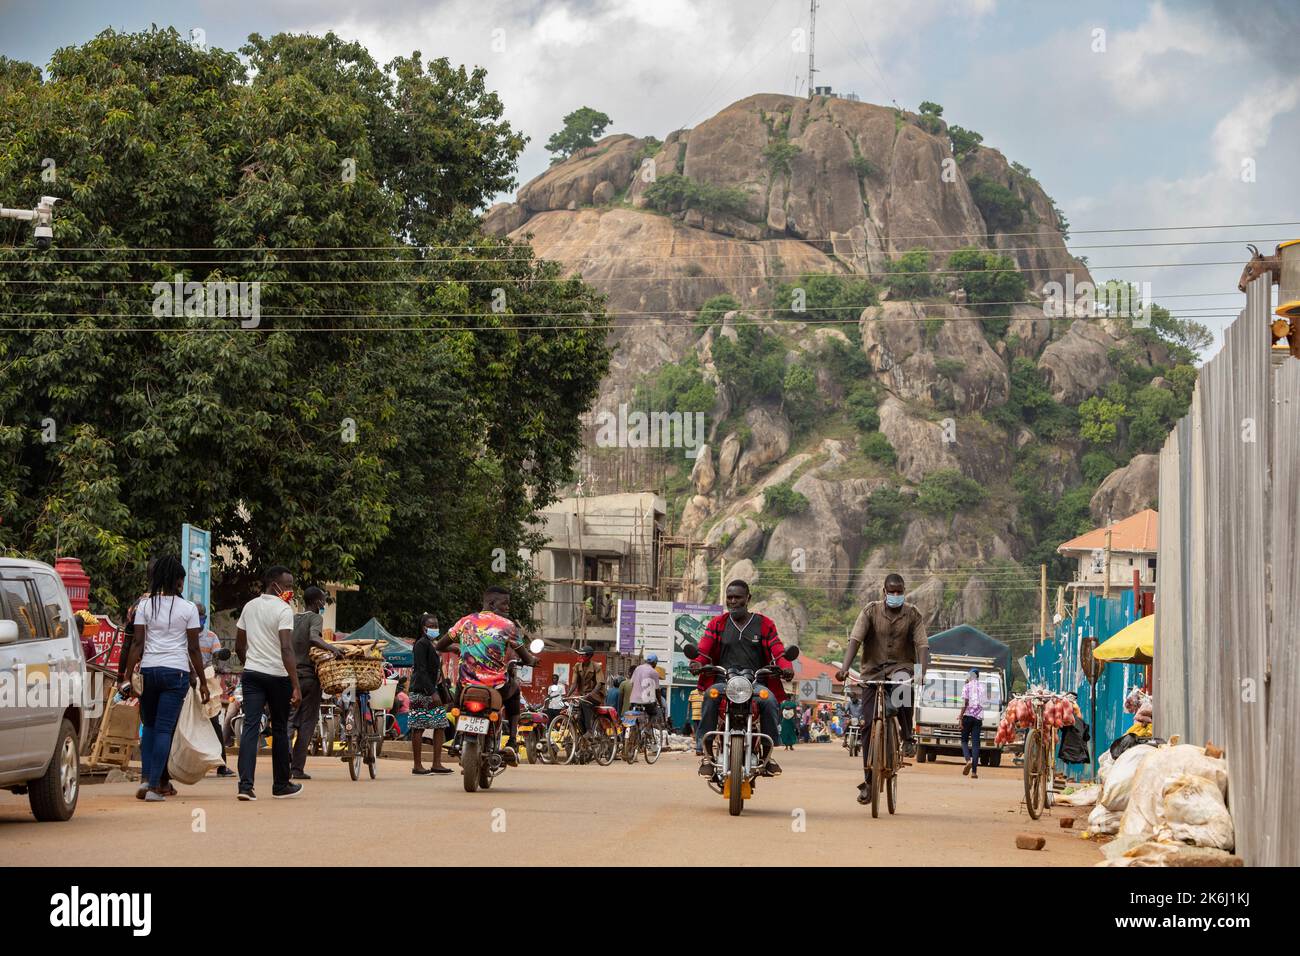 Die Stadt Soroti, Uganda, wird von einem großen vulkanischen Plug dominiert, der über seinen belebten Straßen aufsteigt. Uganda, Ostafrika Stockfoto